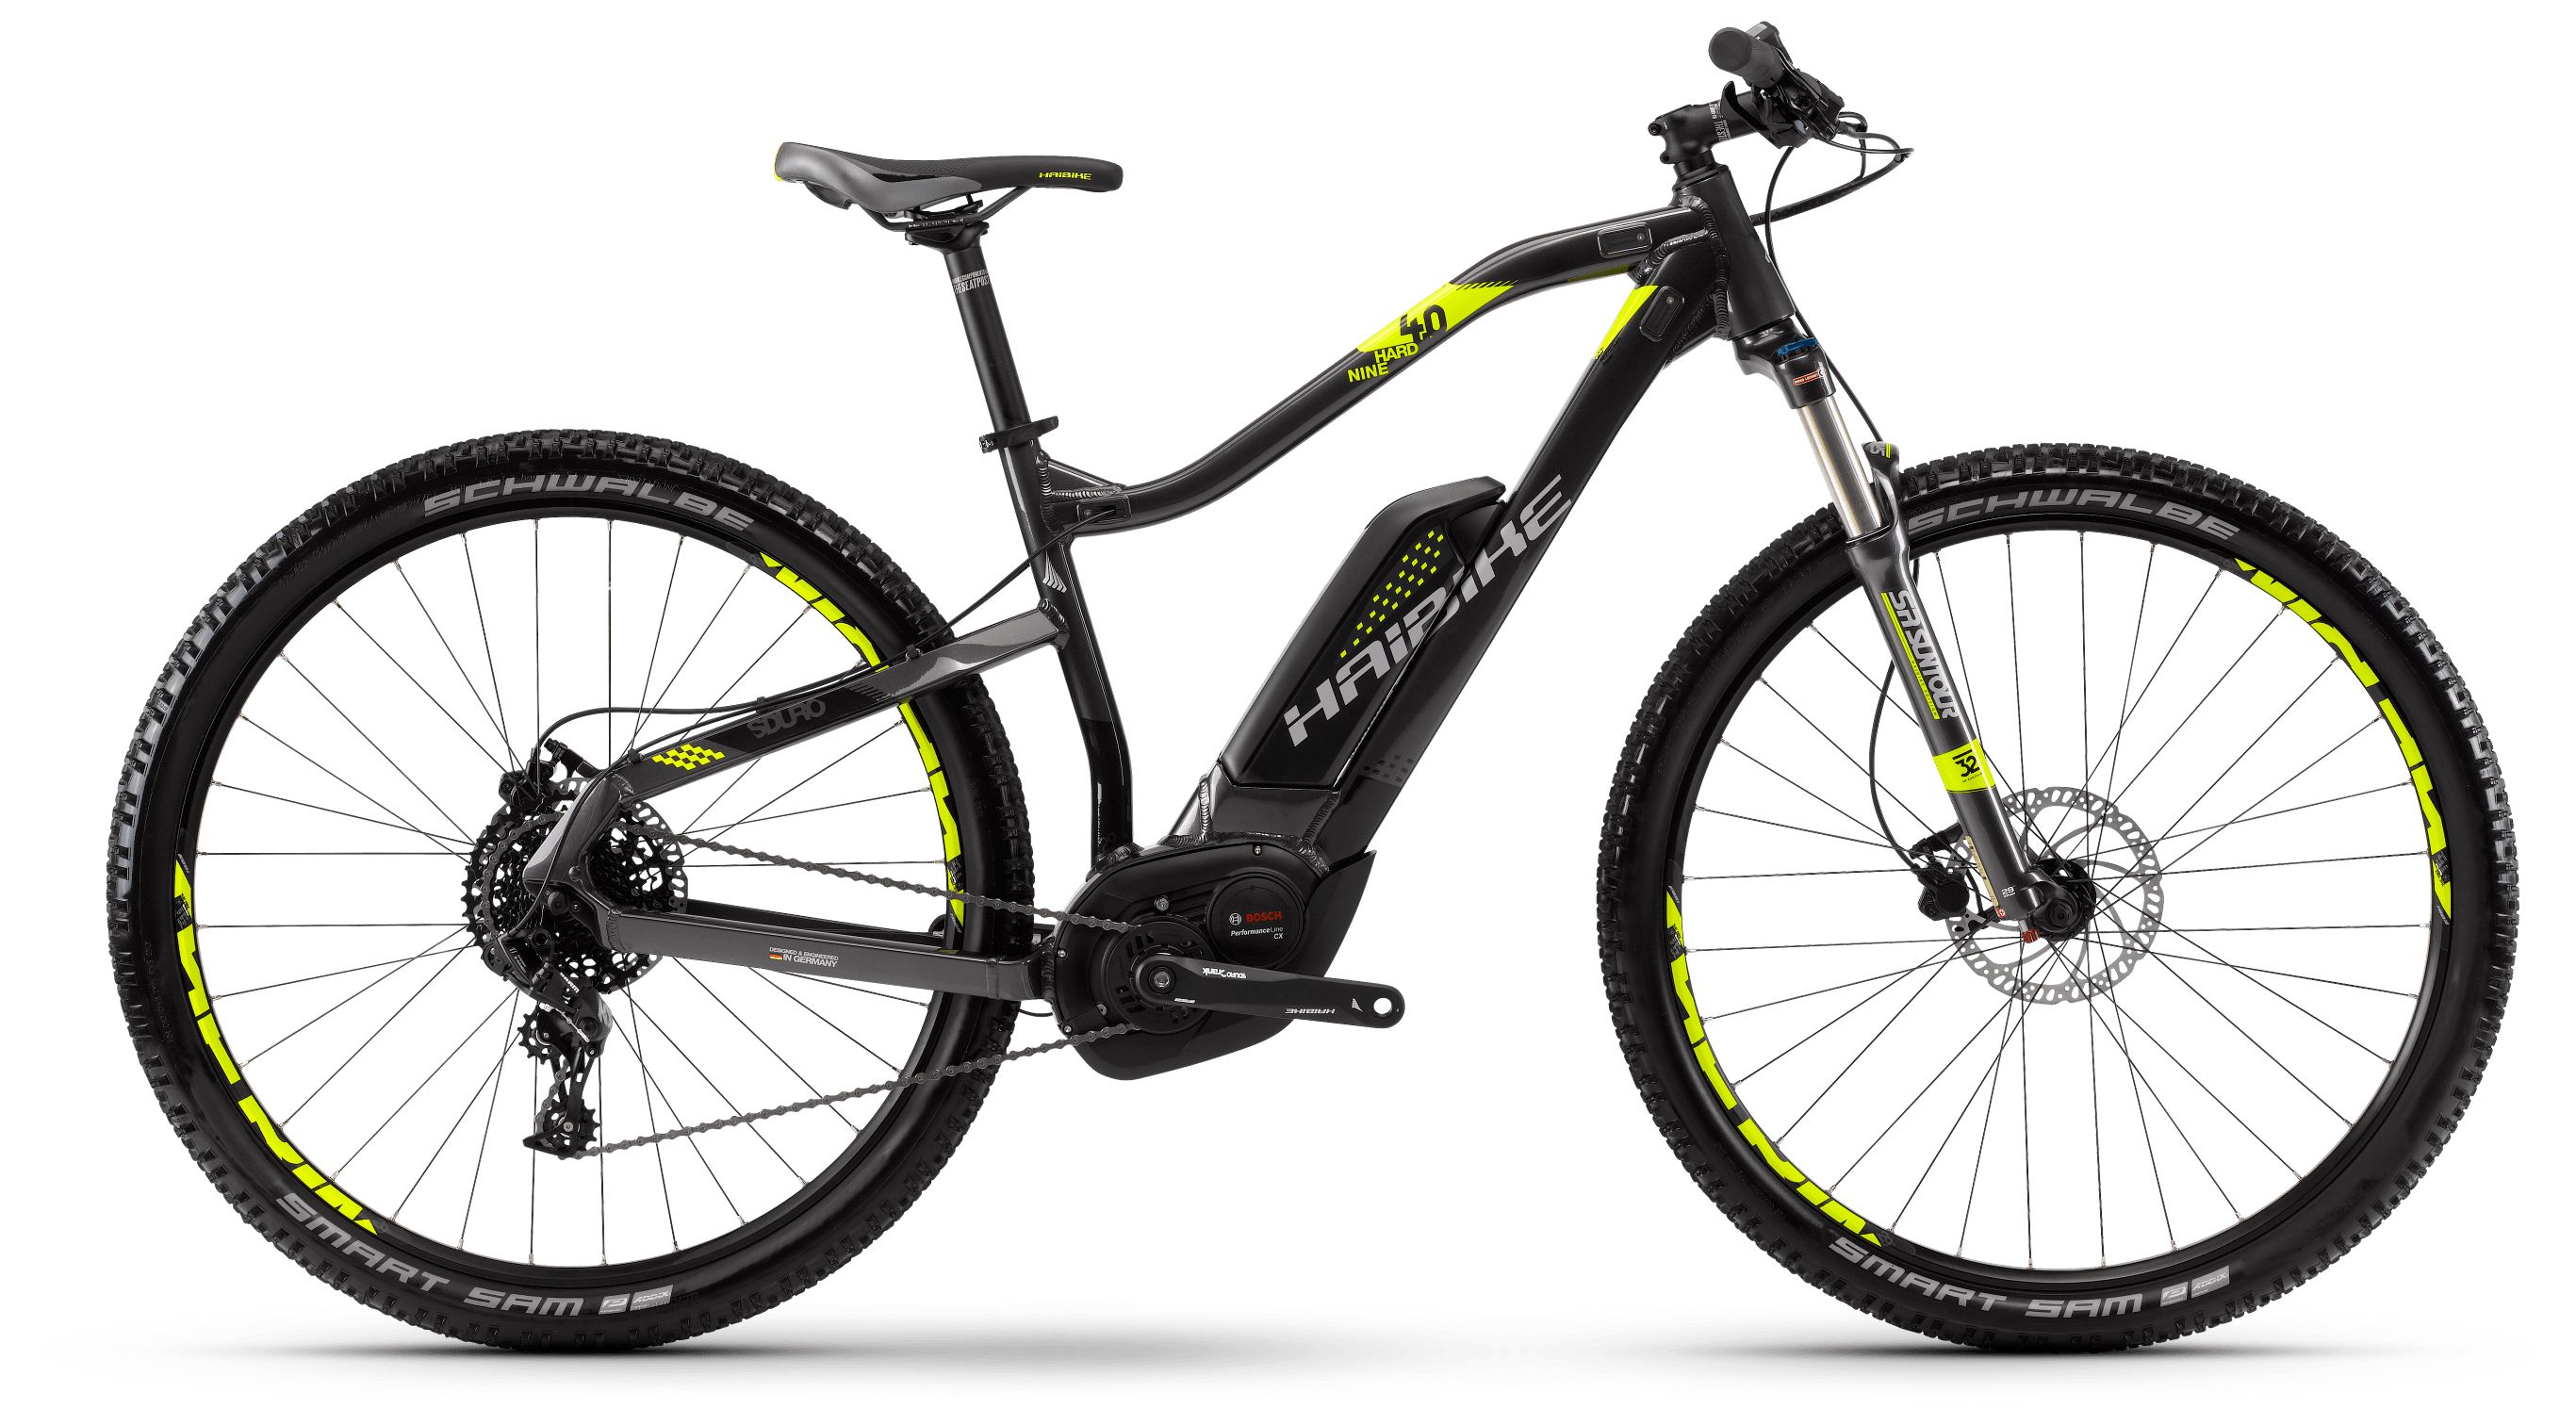  Отзывы о Горном велосипеде Haibike Sduro HardNine 4.0 500Wh 11s NX 2018